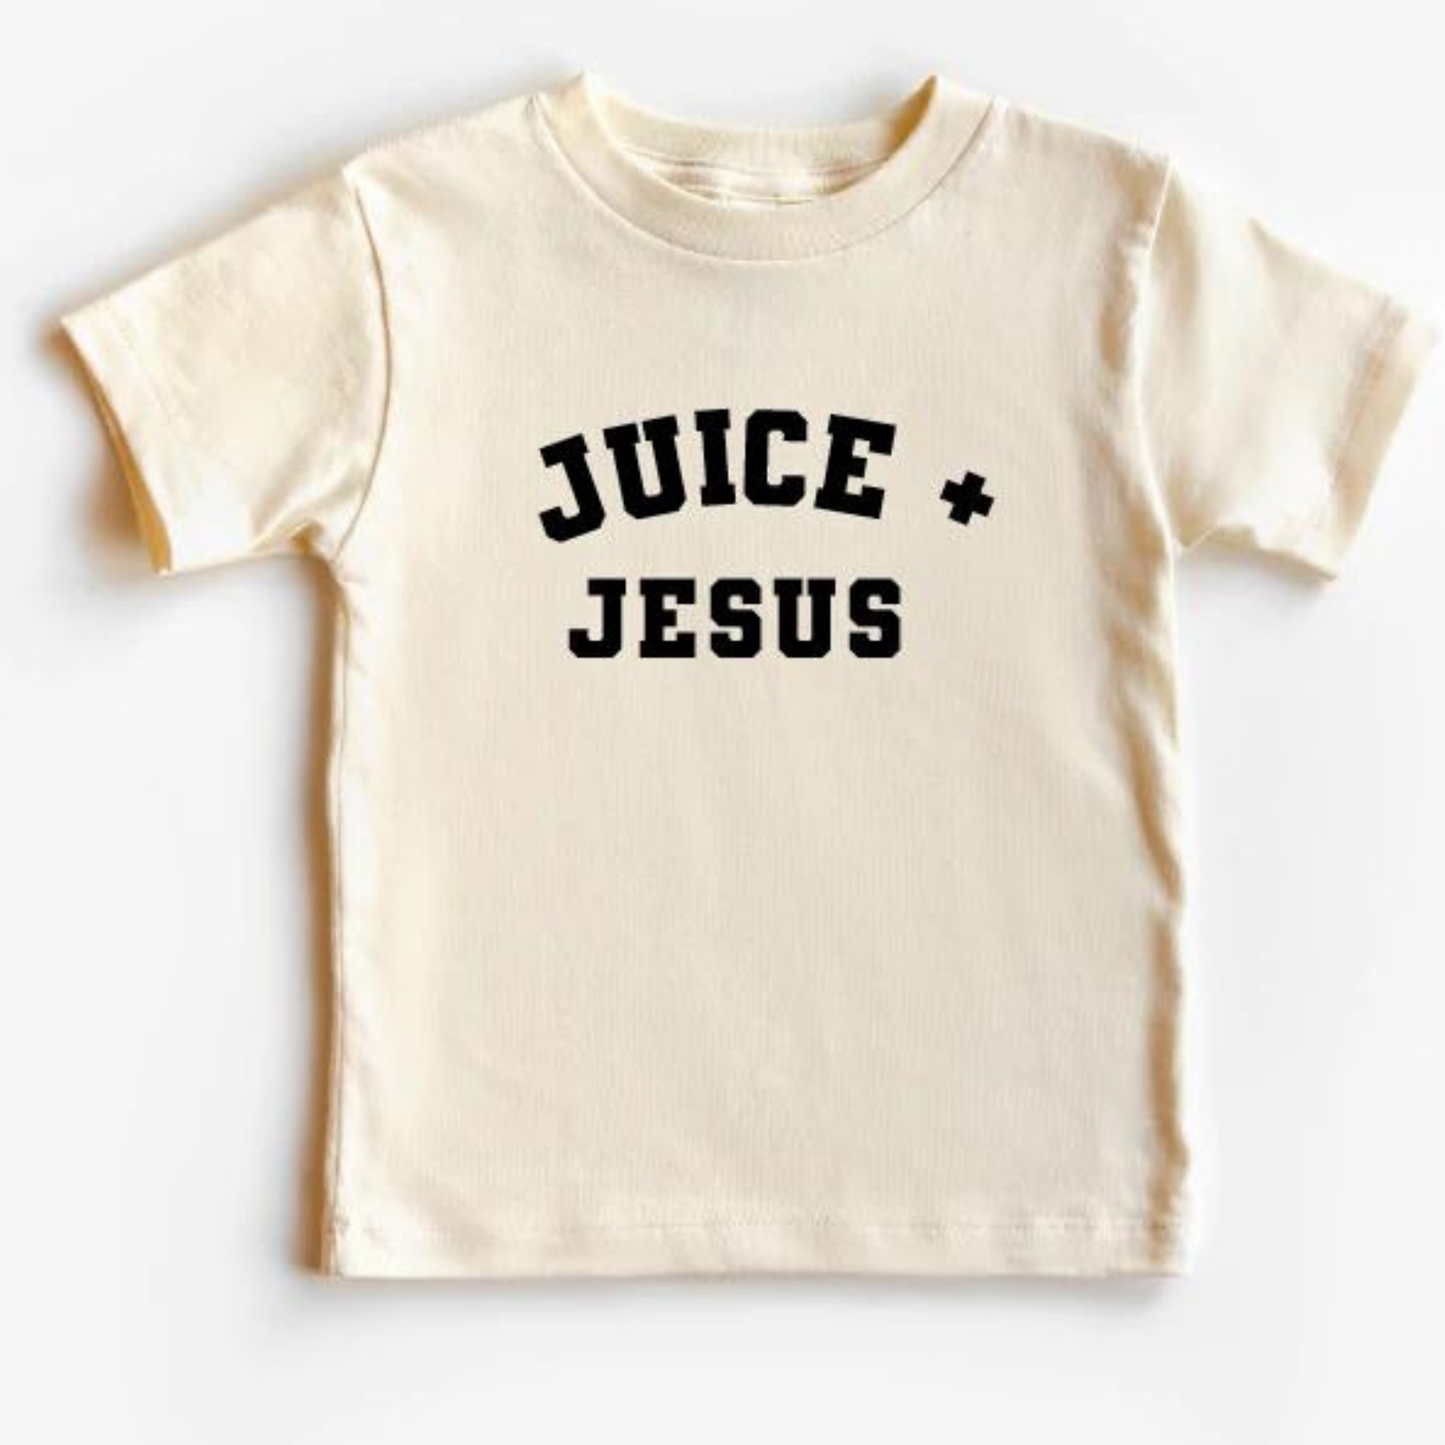 Juice + Jesus Graphic Tee, Natural